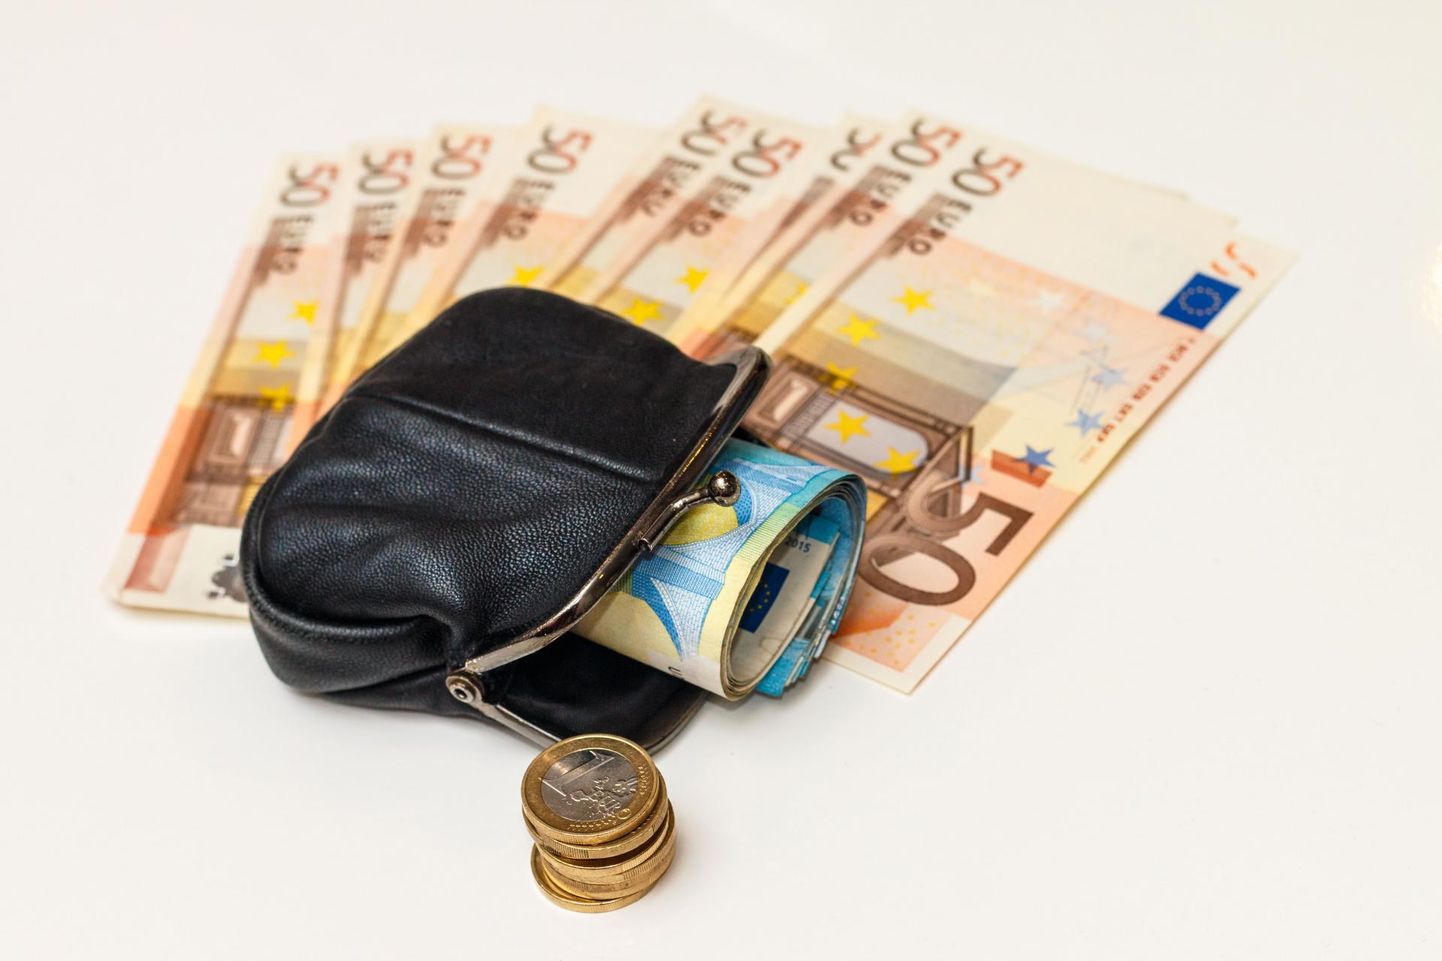 Keskmine Pärnu kontorist välja antud eluasemelaenu summa on kerkinud 61 000 euroni.